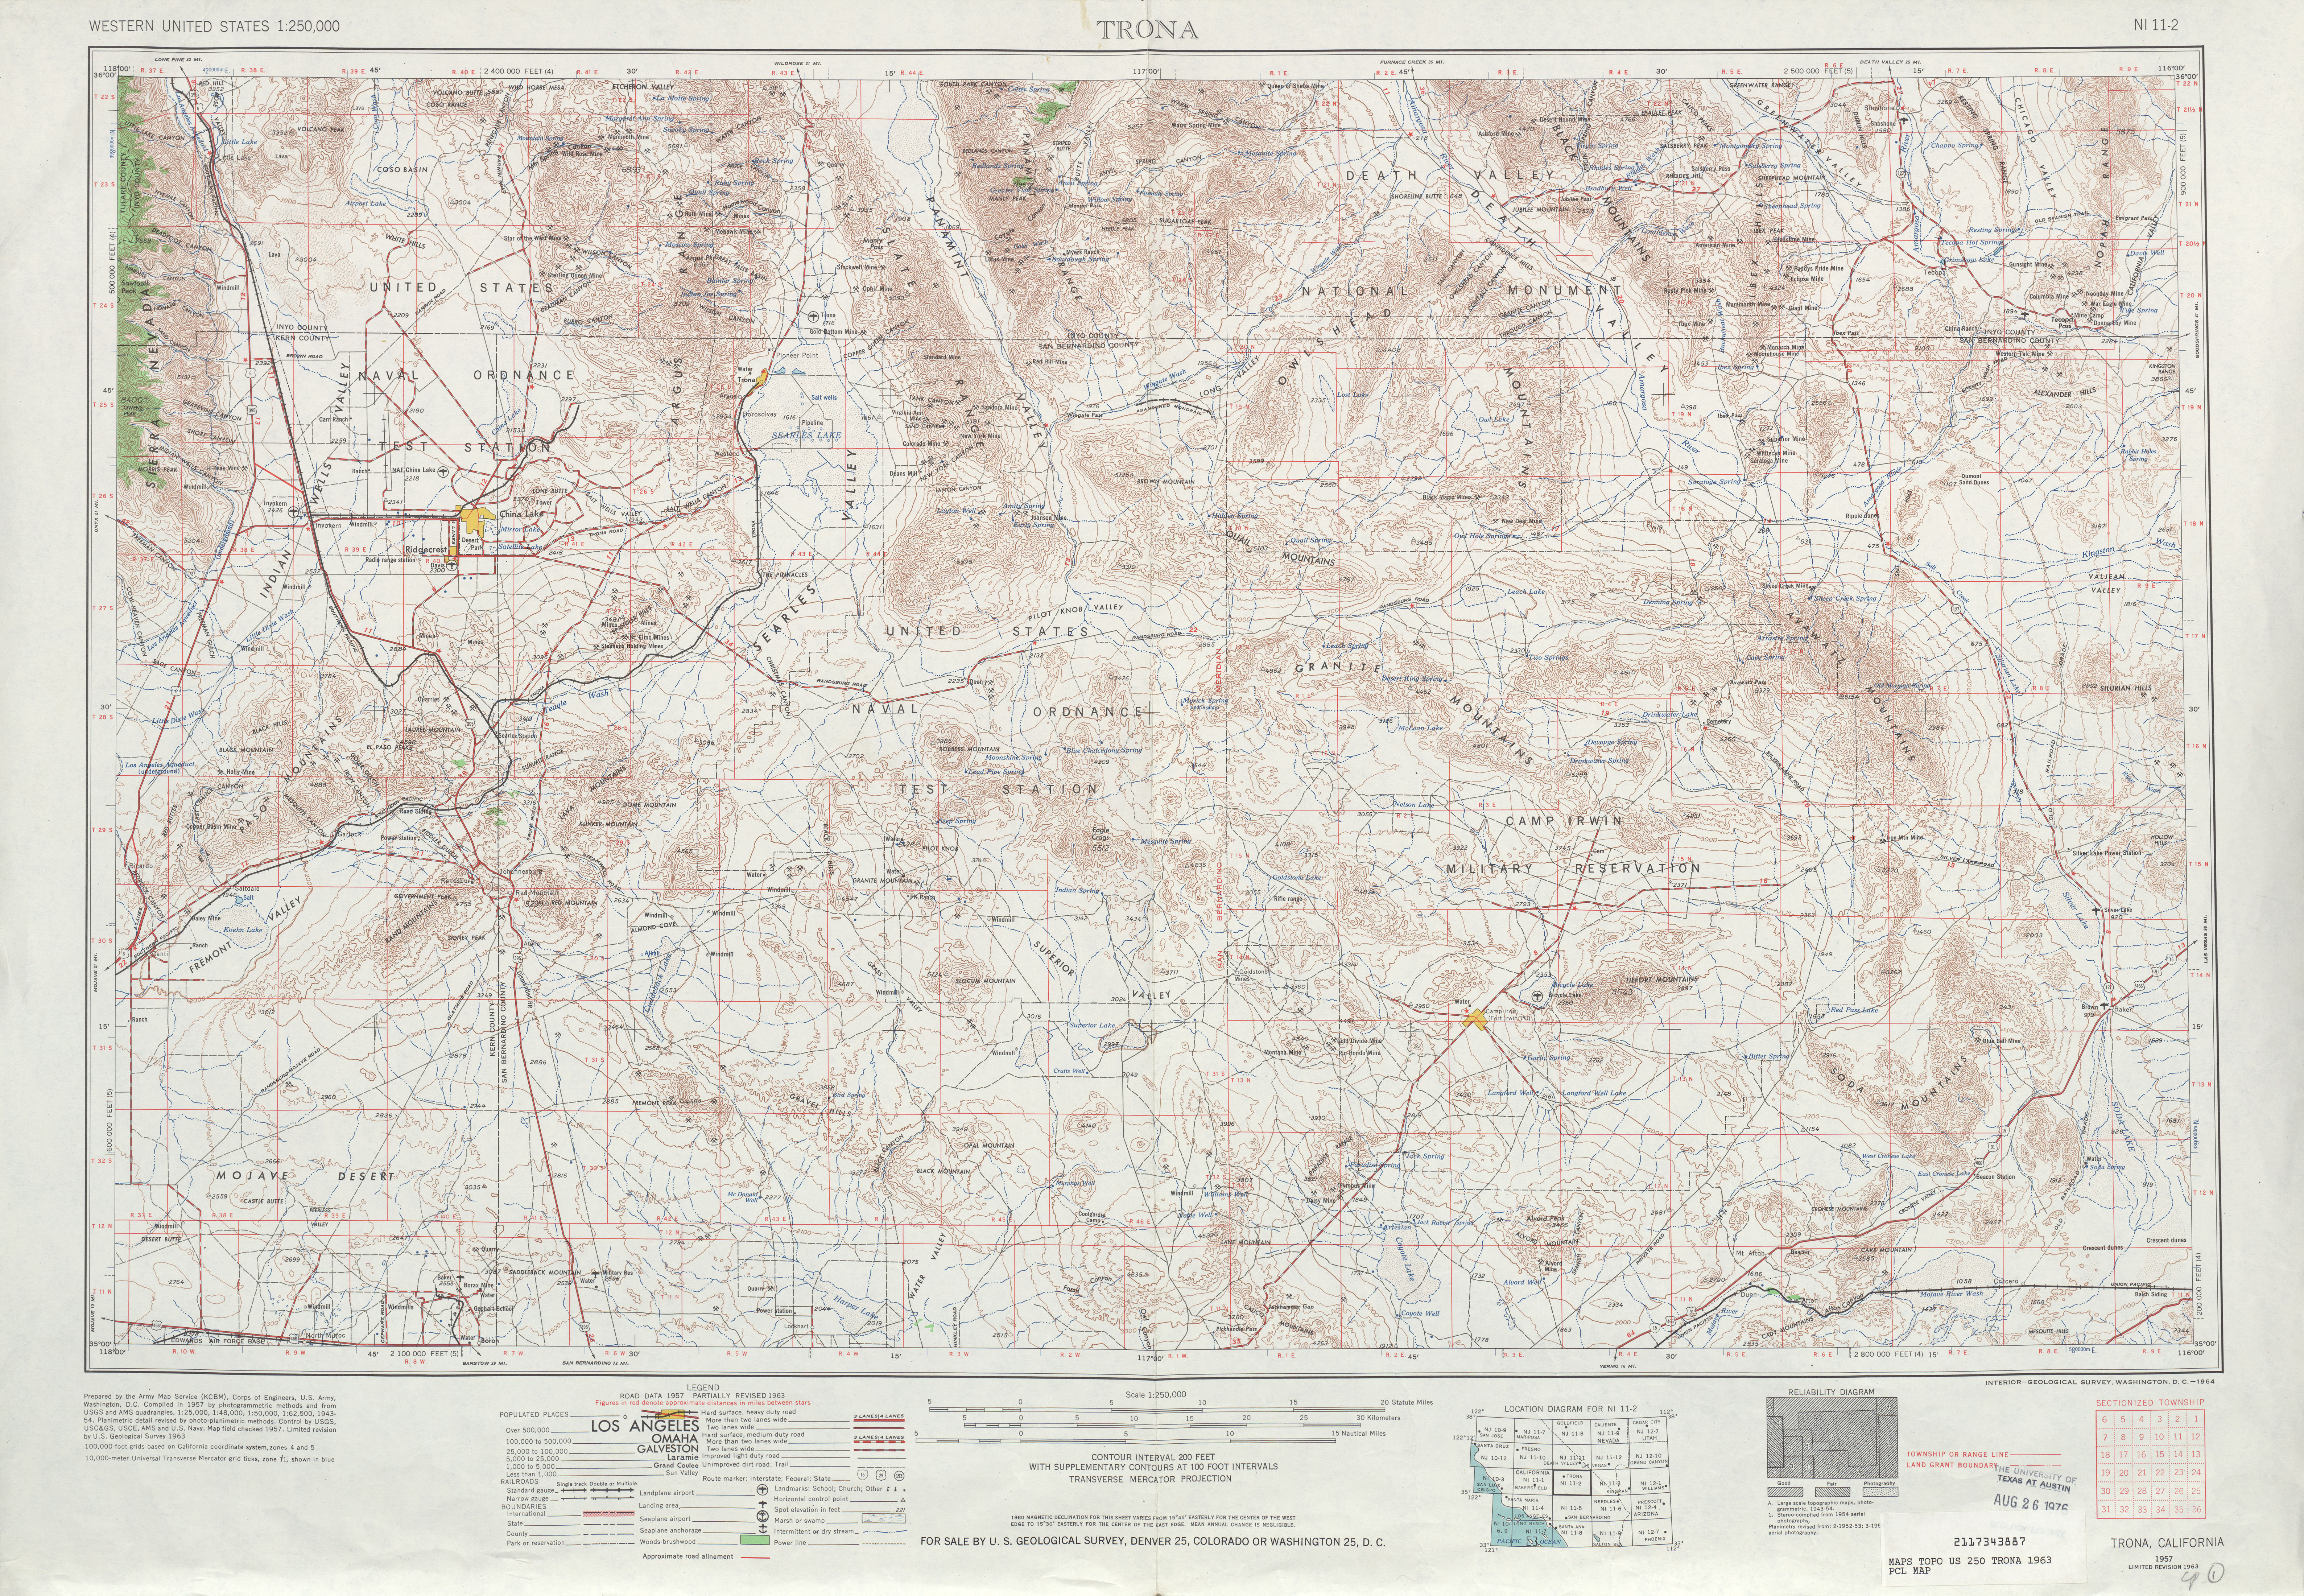 Hoja Trona del Mapa Topográfico de los Estados Unidos 1963